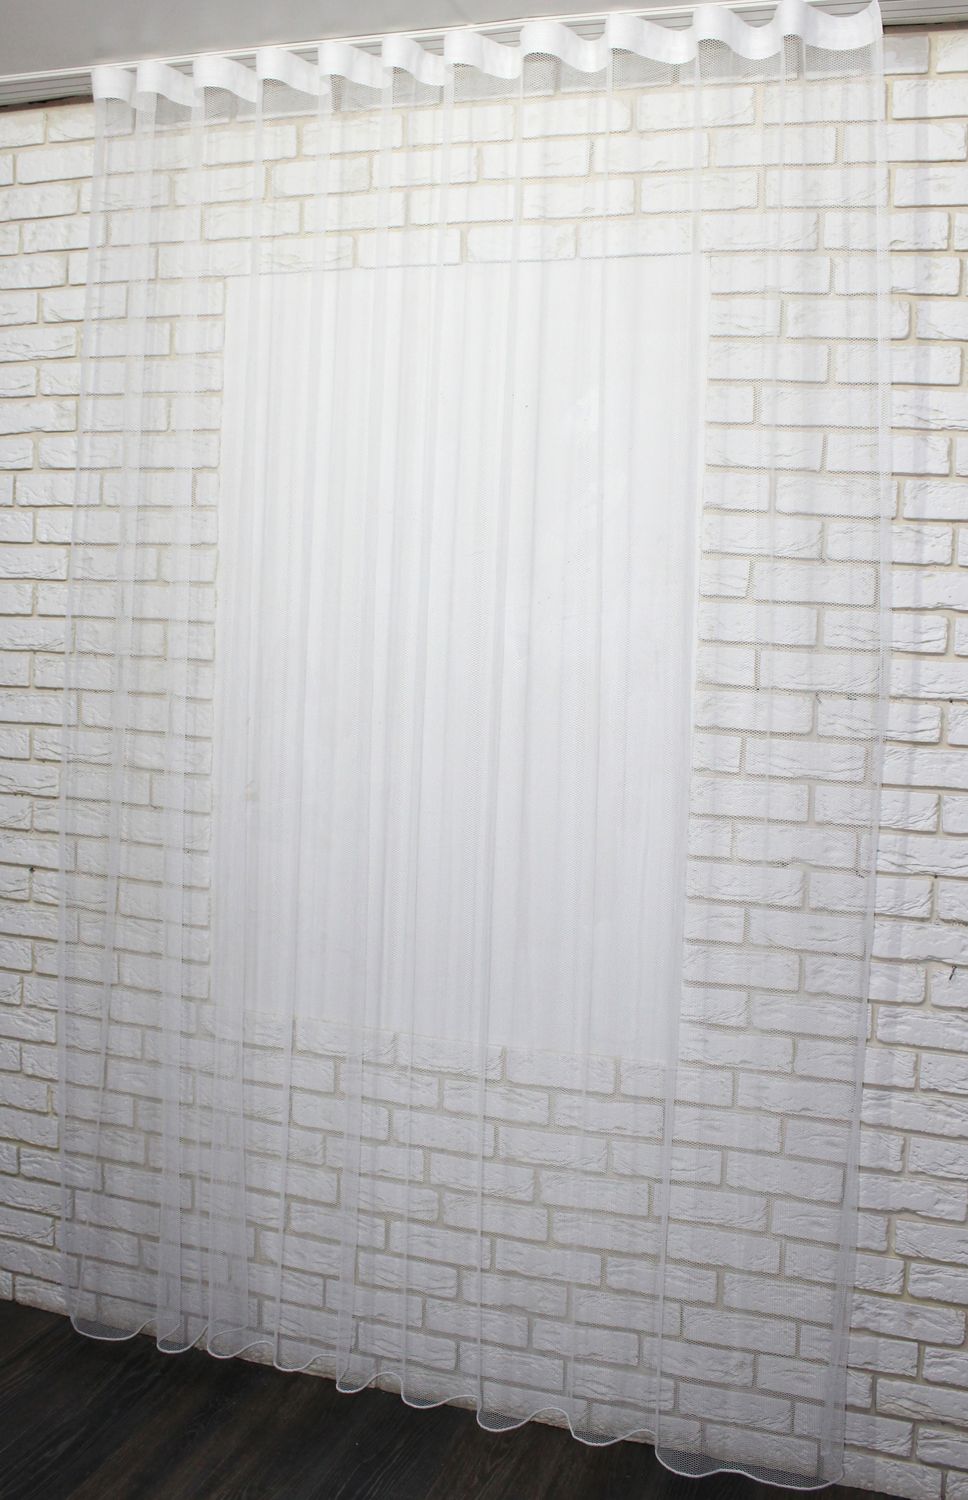 Тюль грек-сетка однотонная, коллекция "Грек Соты", высотой 3м цвет белый 957т, Тюль на метраж, Без крепления, ткань на отрез, Нужную Вам ширину указывайте при покупке. (Ширина набирается по длине рулона.), 3 м.